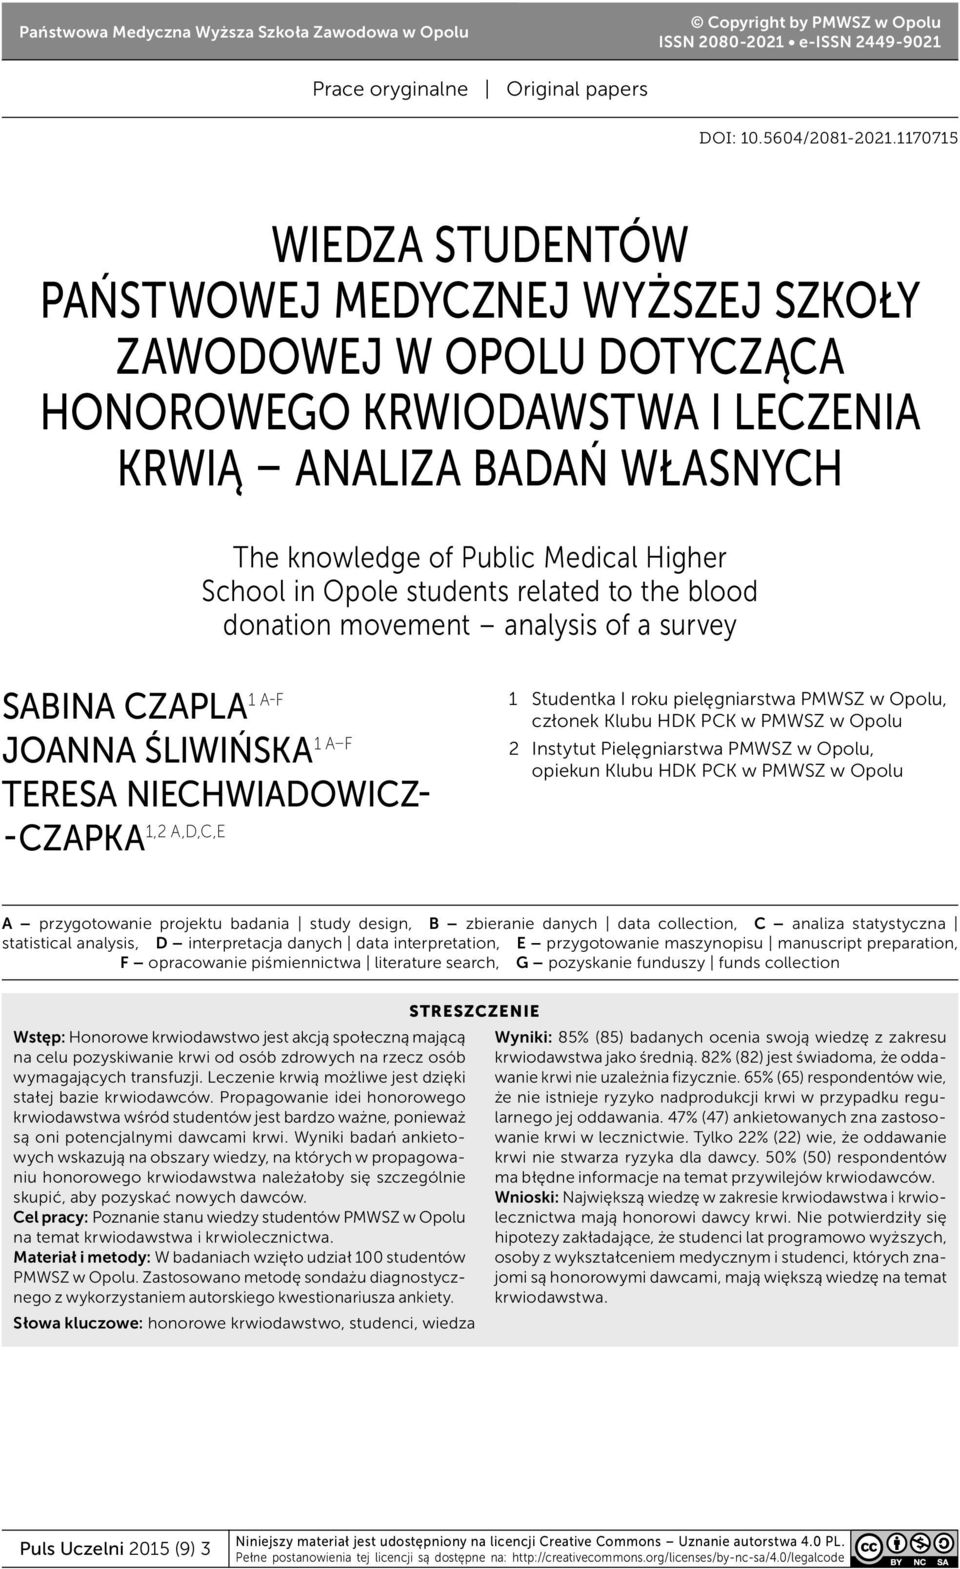 in Opole students related to the blood donation movement analysis of a survey SABINA CZAPLA 1 A-F JOANNA ŚLIWIŃSKA 1 A F TERESA NIECHWIADOWICZ- 1,2 A,D,C,E -CZAPKA 1 Studentka I roku pielęgniarstwa